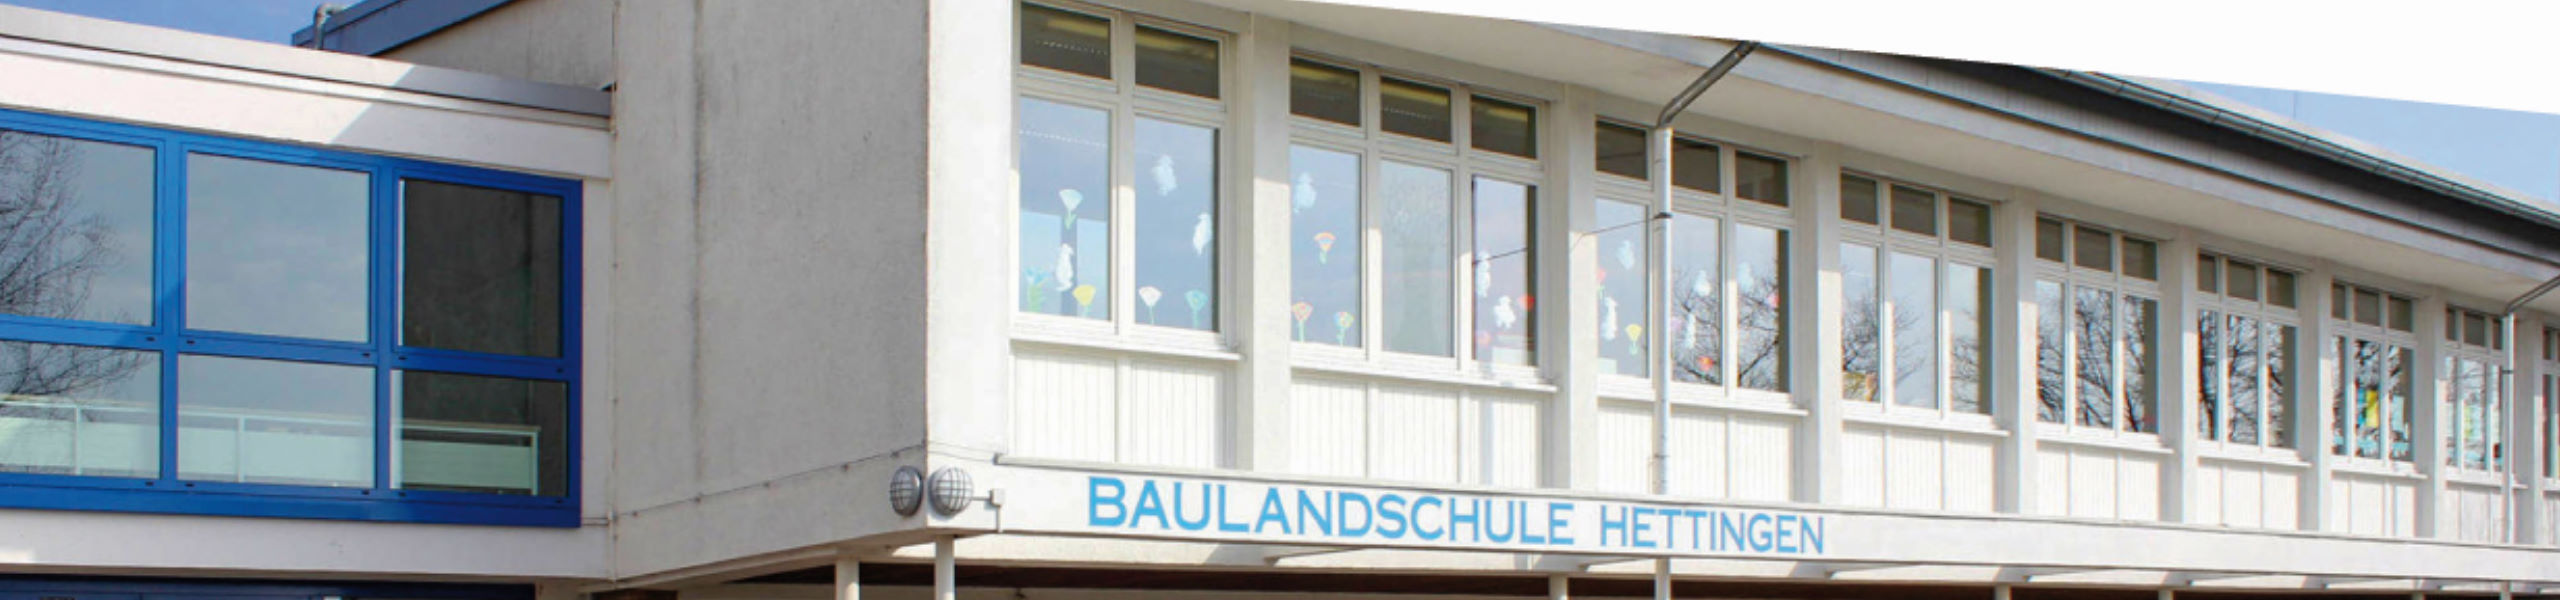 Baulandschule Hettingen - Leseschule